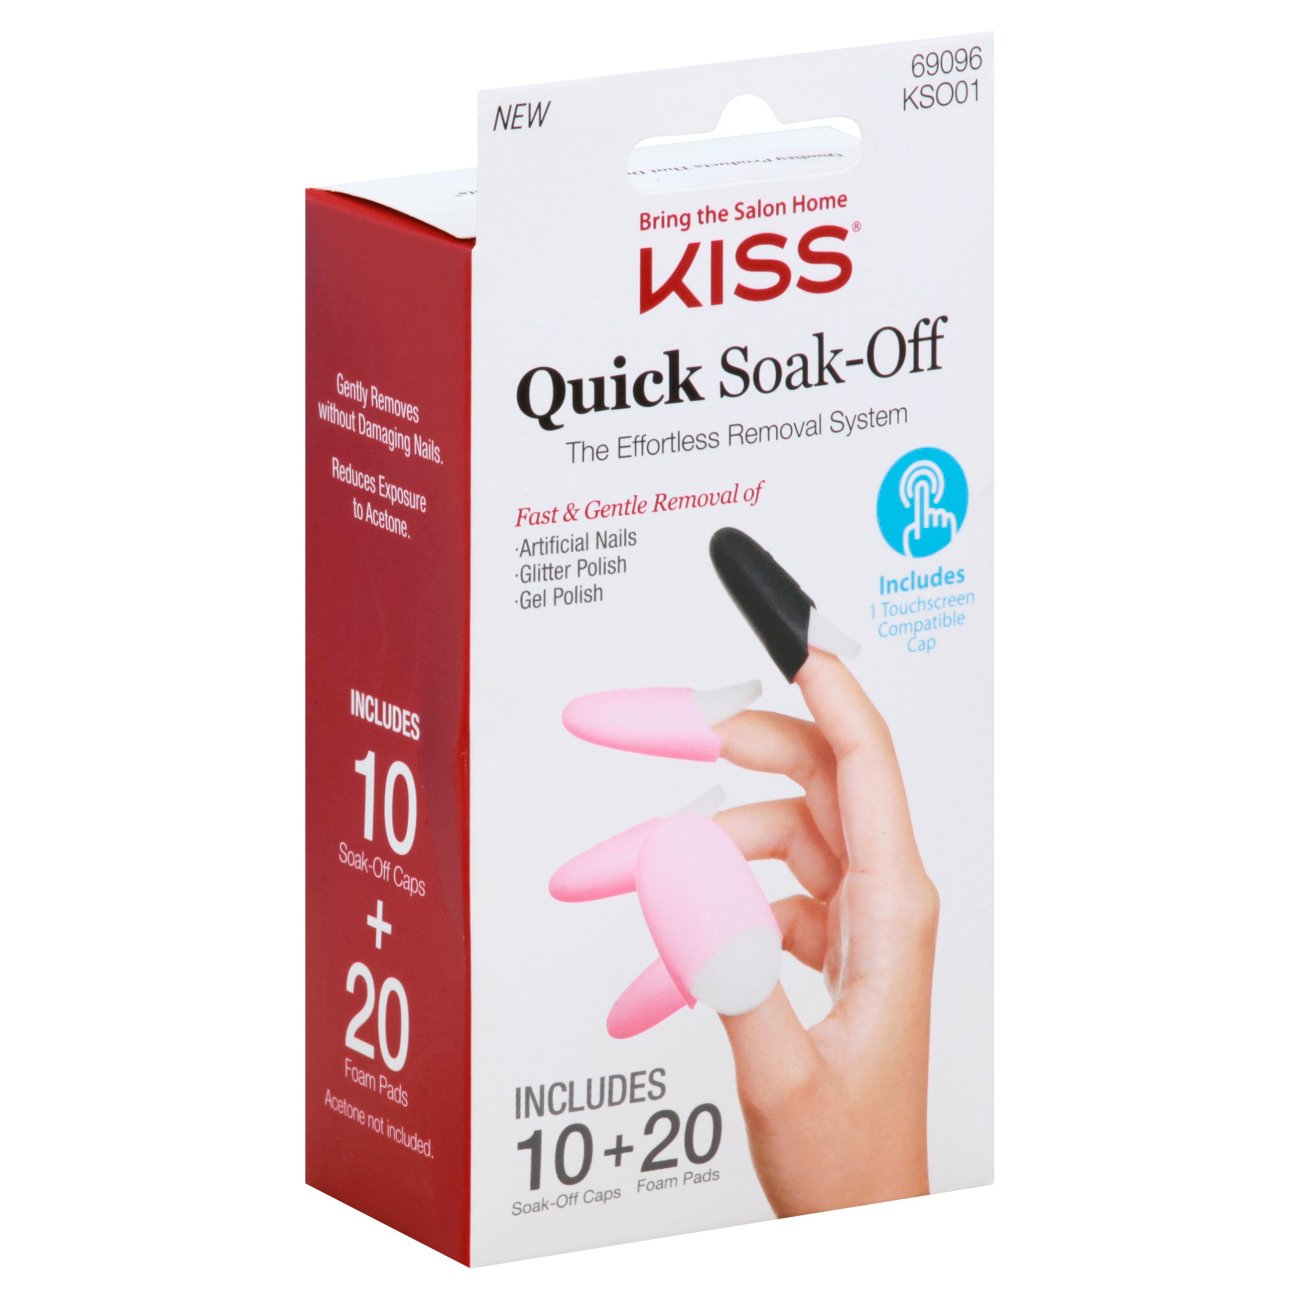 Kiss Quick Soak-Off - Shop Nails at H-E-B